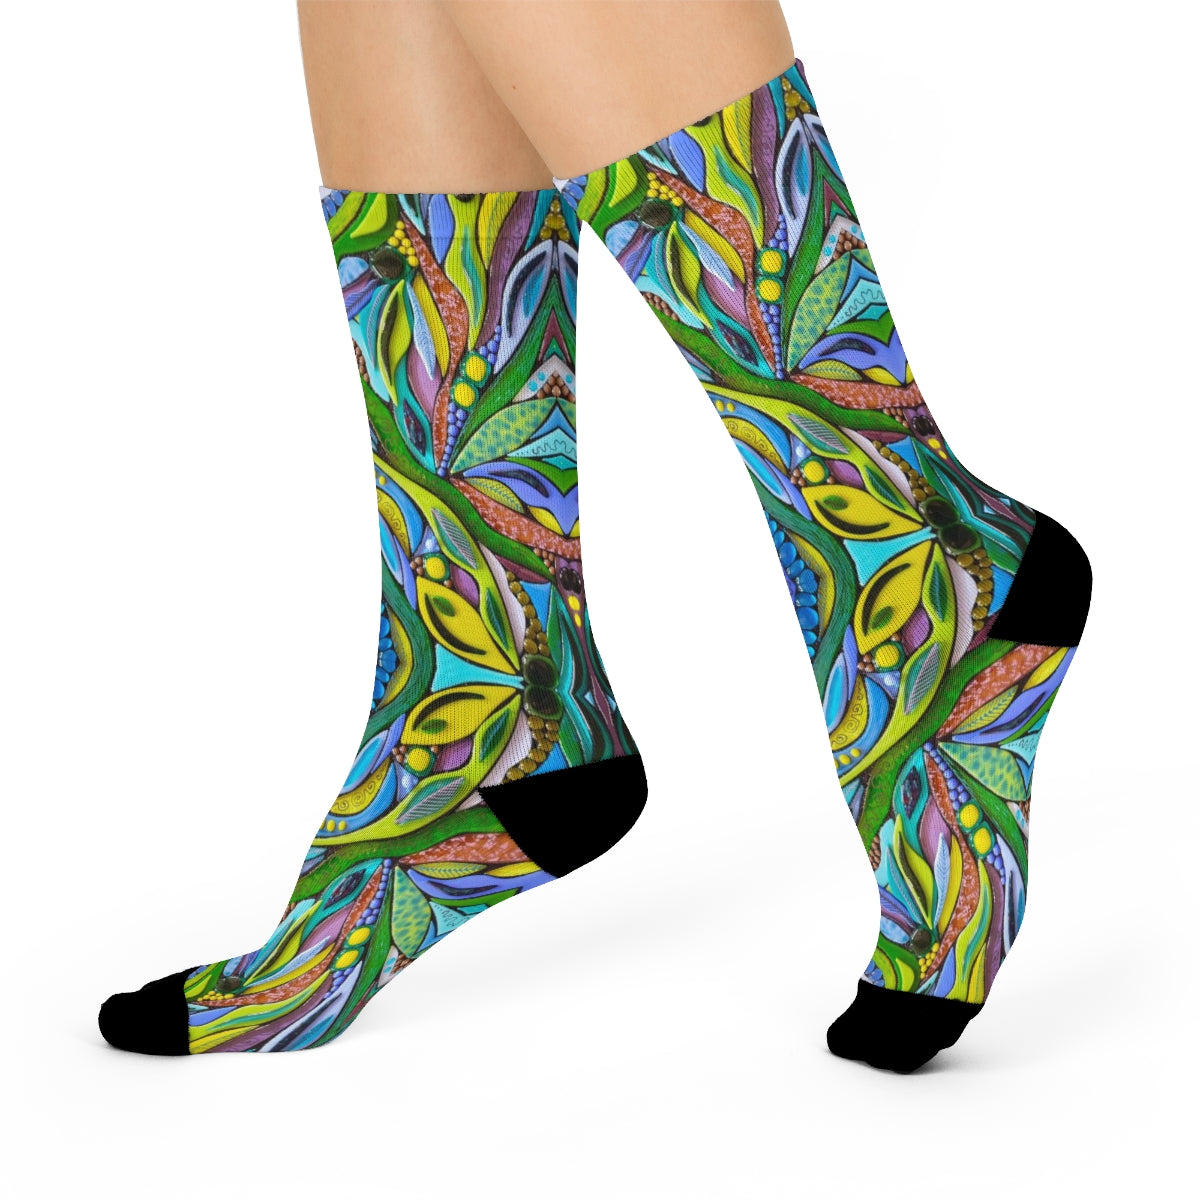 fun colorful dress socks for men or women 